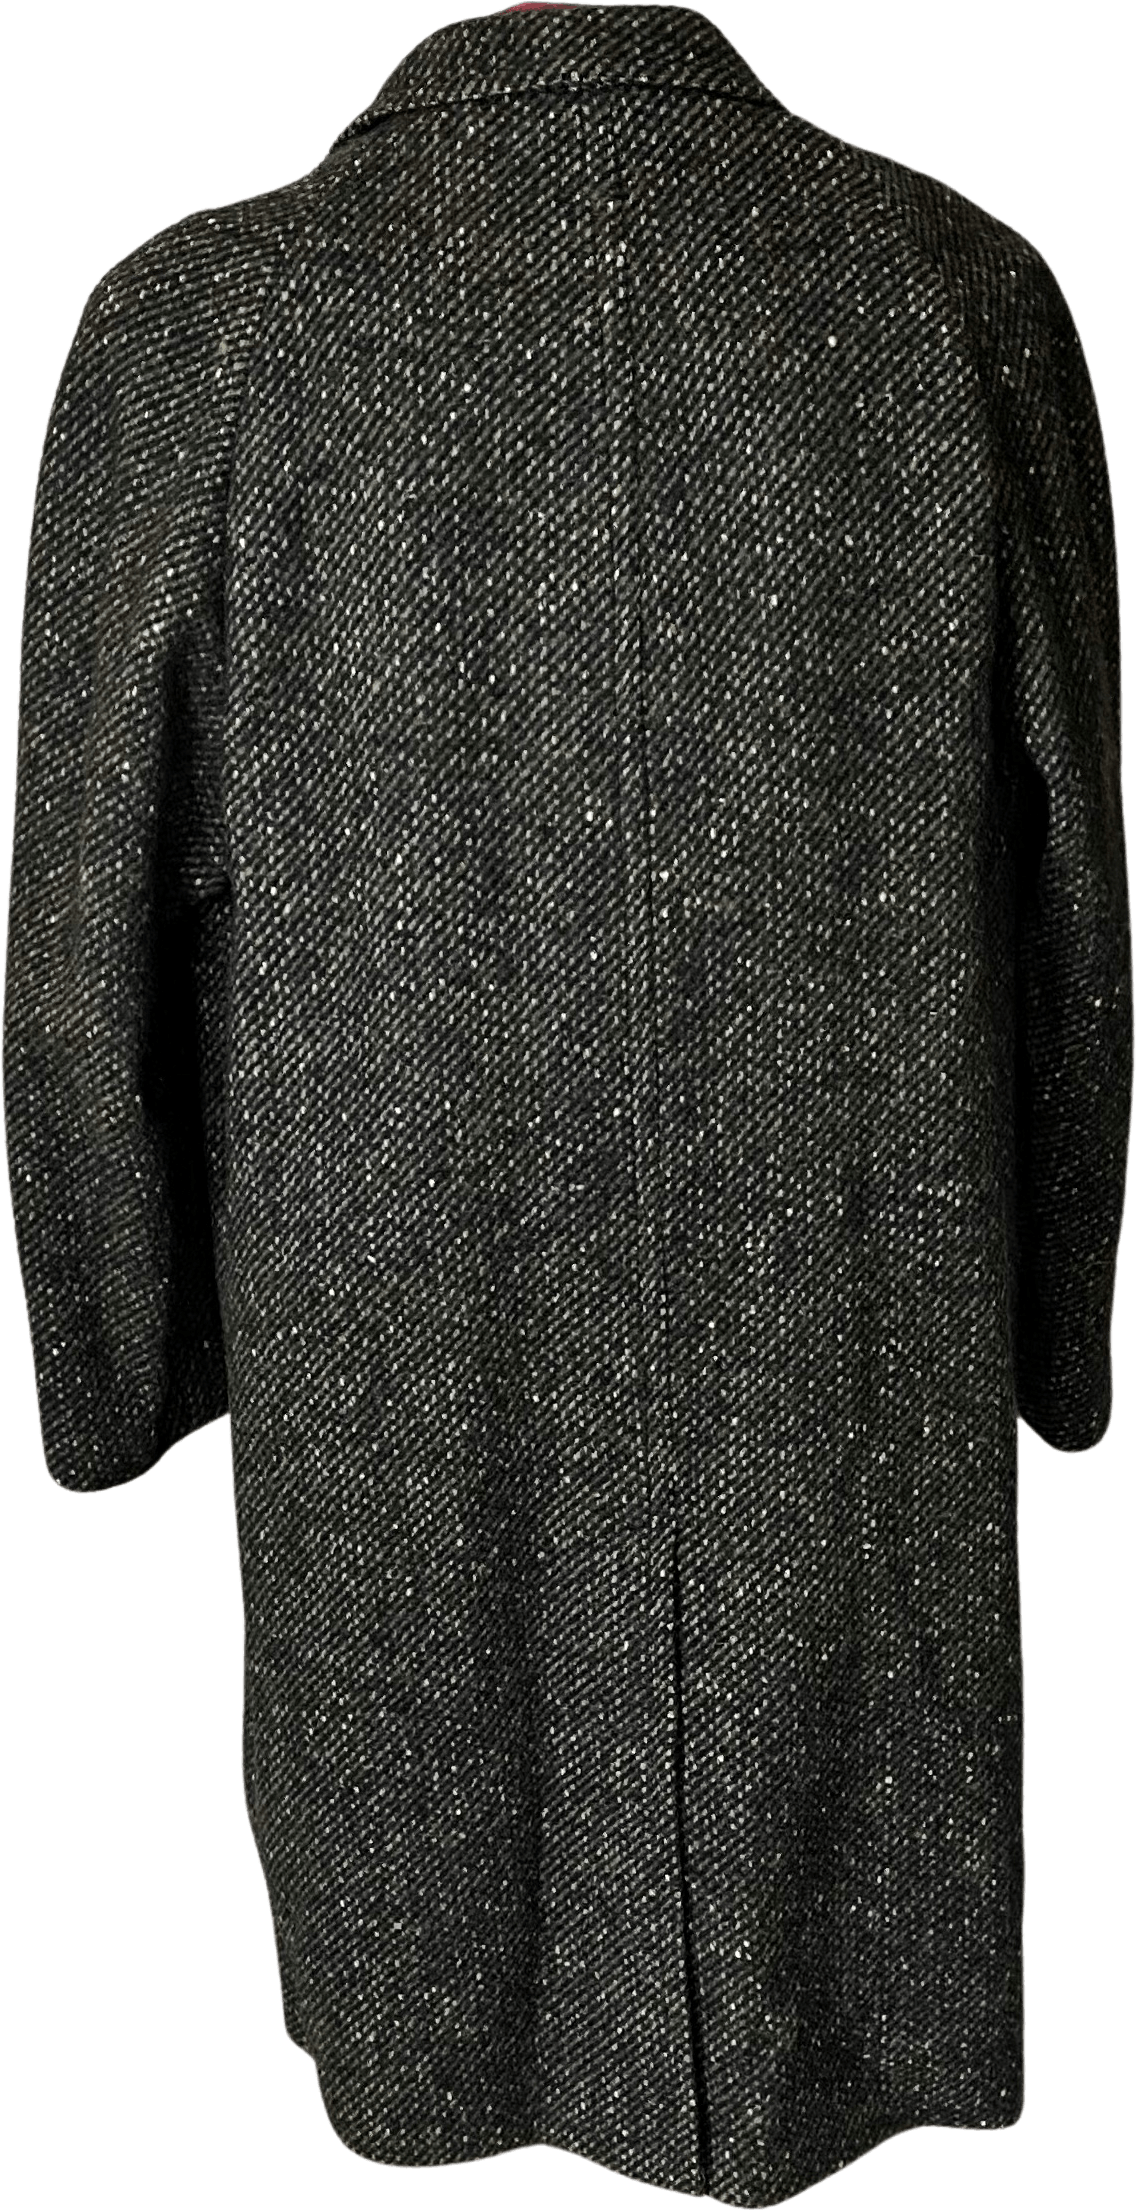 Vintage 50's Men's Wool Overcoat by Rugby Tweed Tailored Bu Gleneagles ...